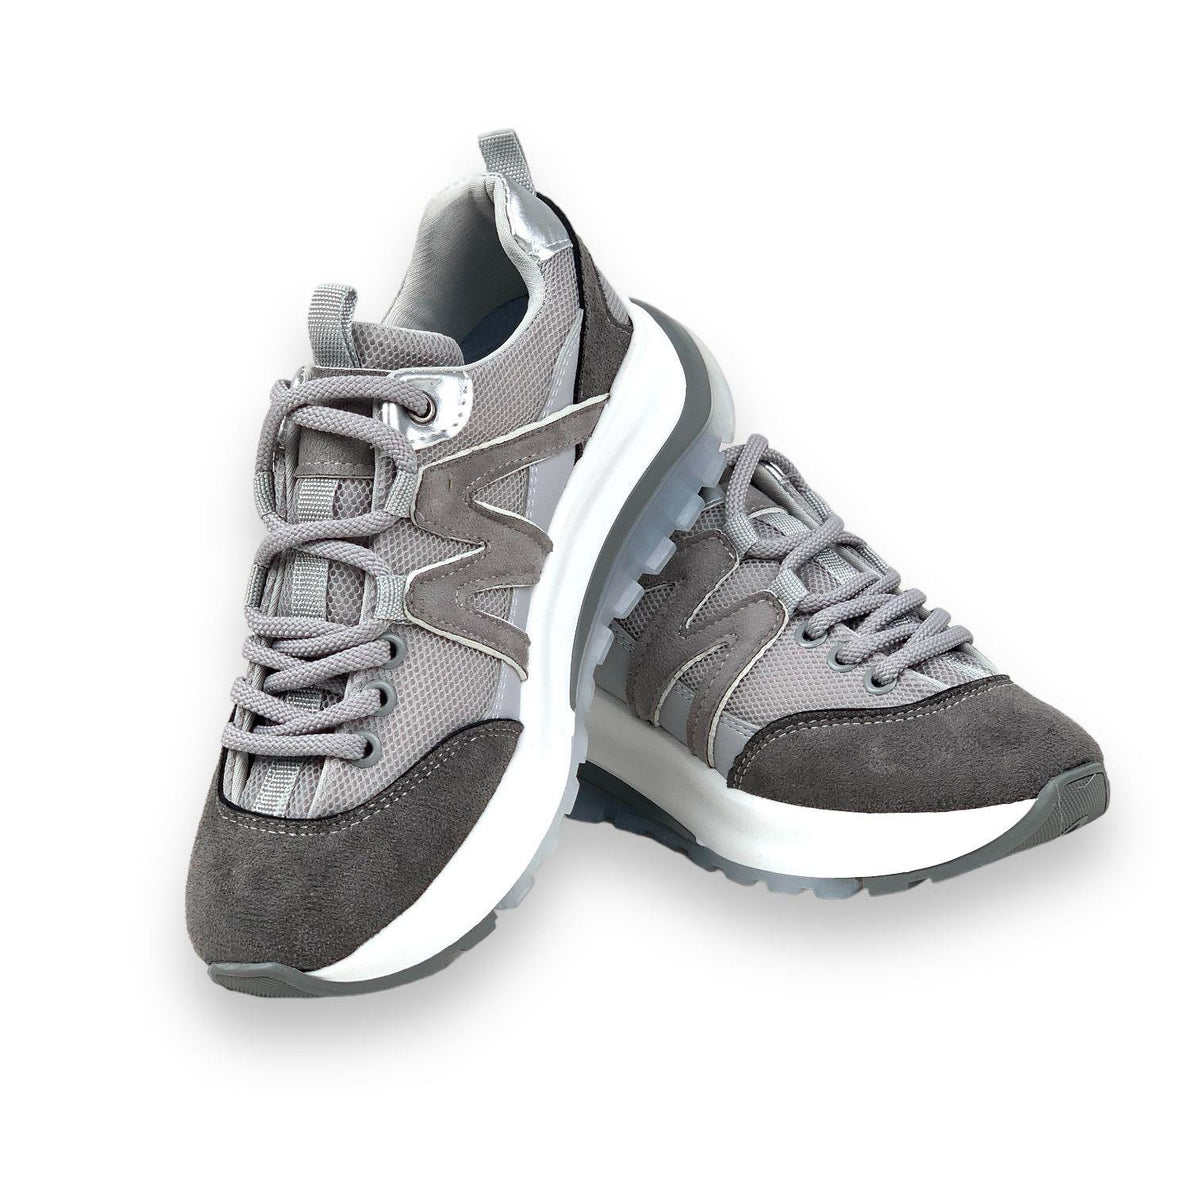 Women's Mafy Gray Comfort Sole Daily Walking Sneaker 4 Cm - STREETMODE ™